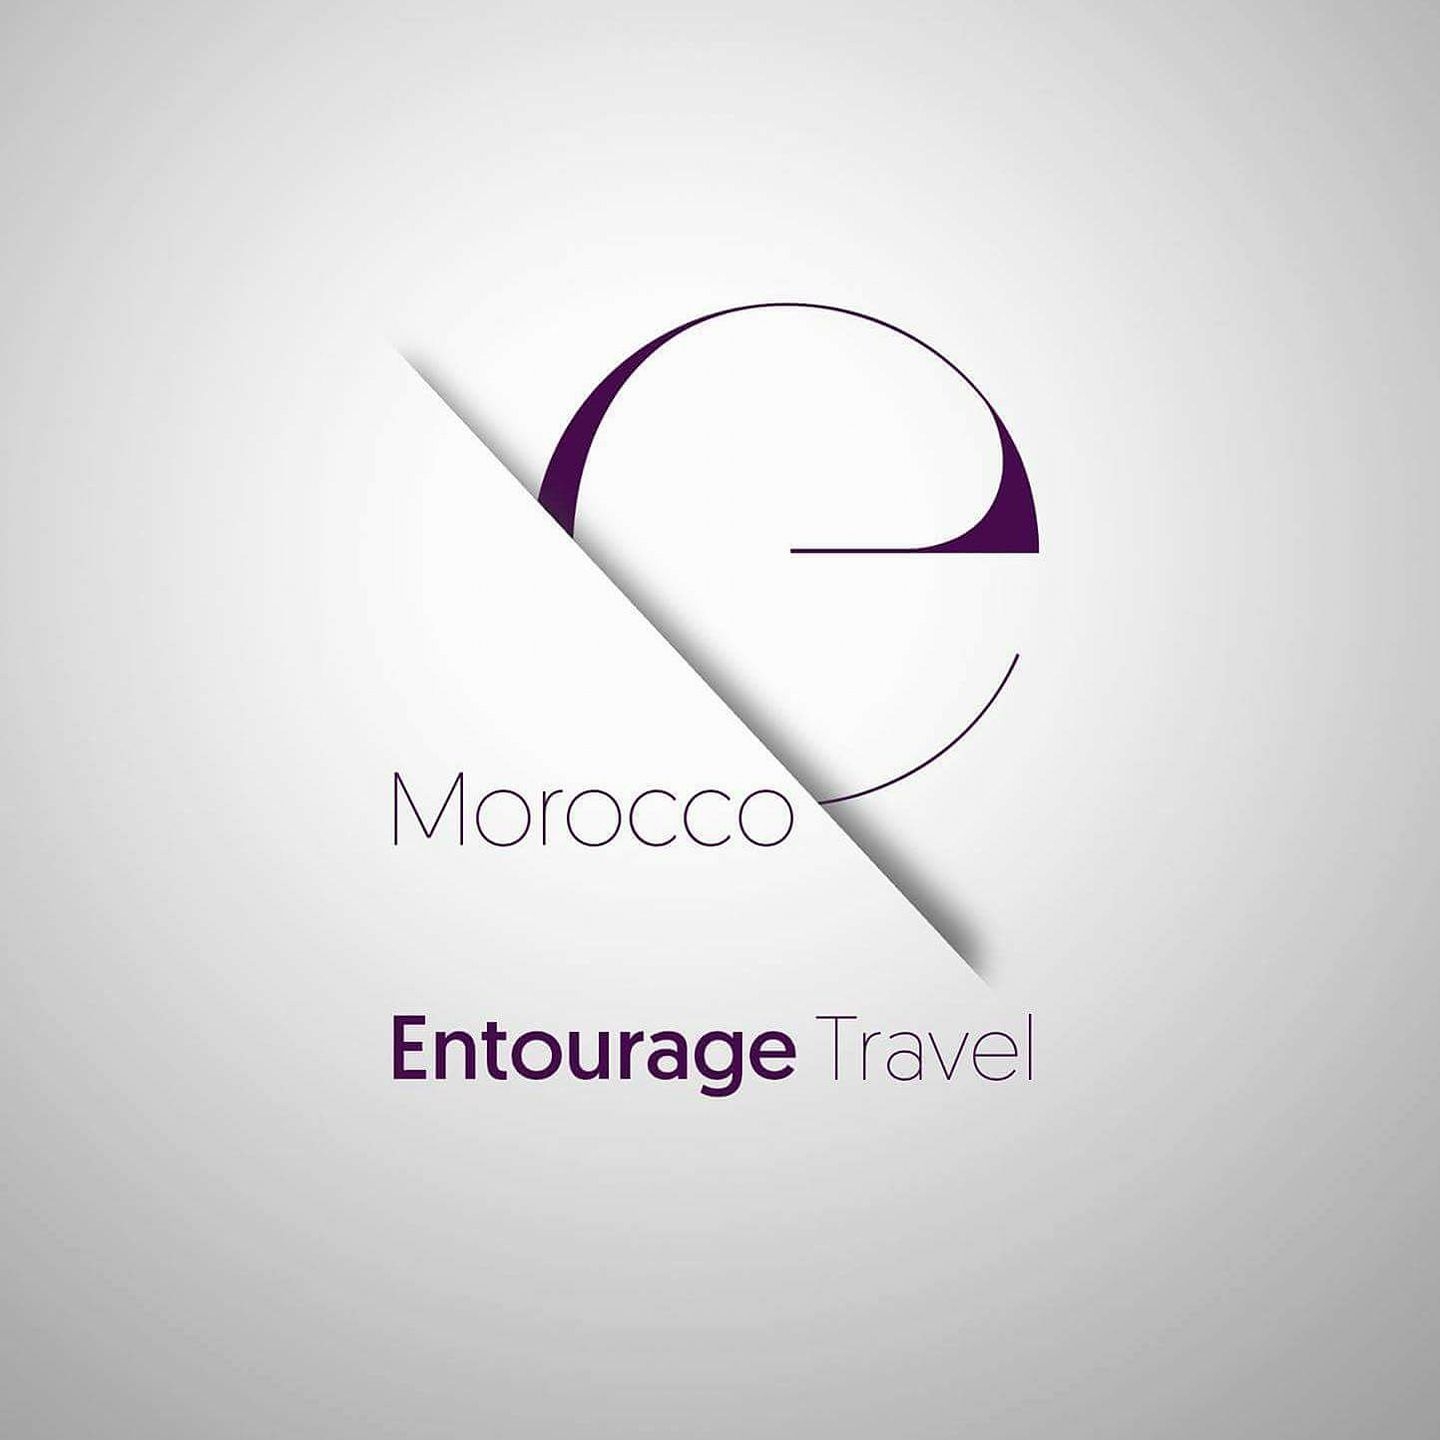 Entourage Travel Morocco